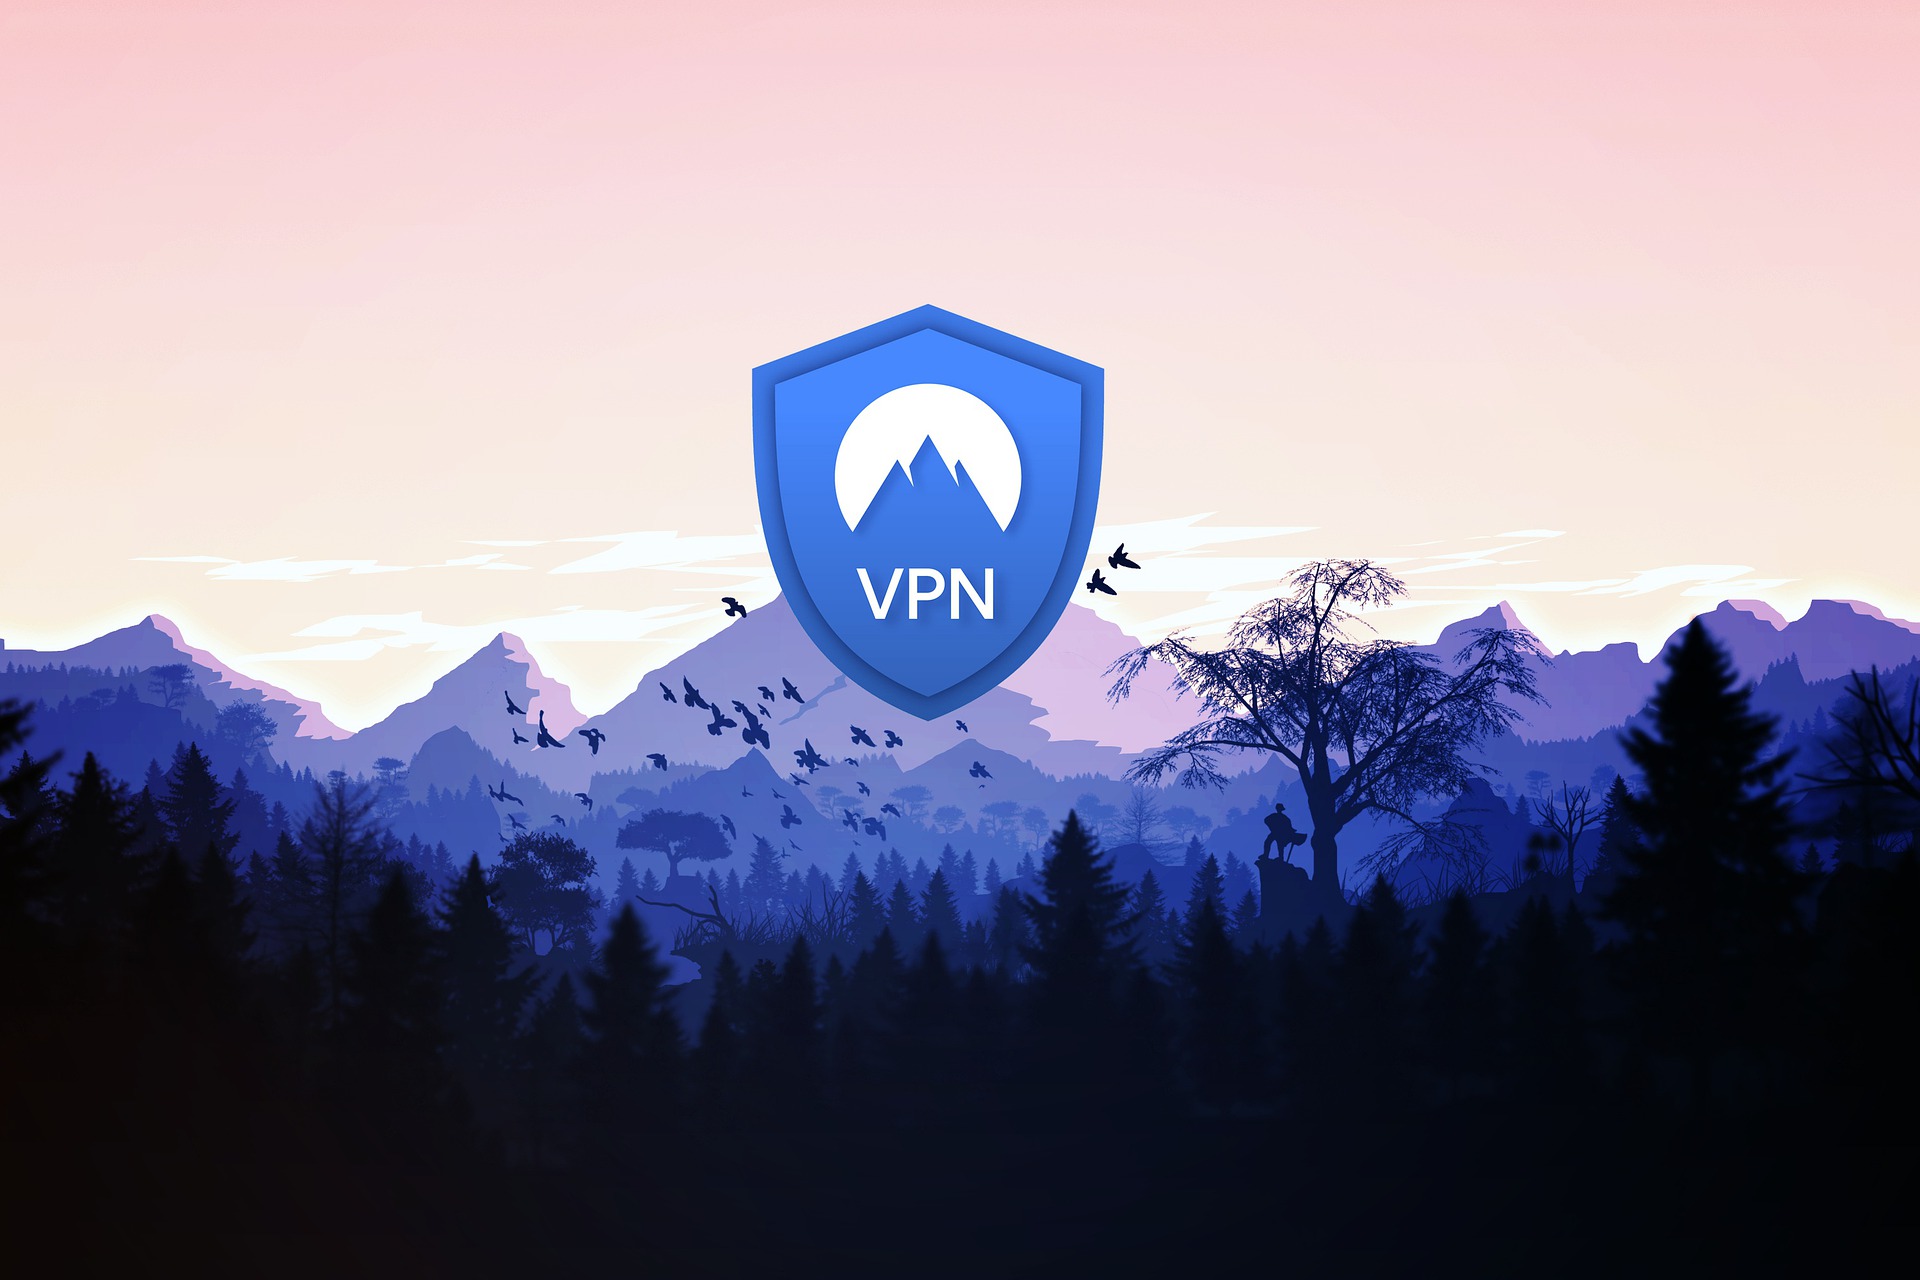 Rozwój technologii VPN: Co nowego możemy oczekiwać w przyszłości?